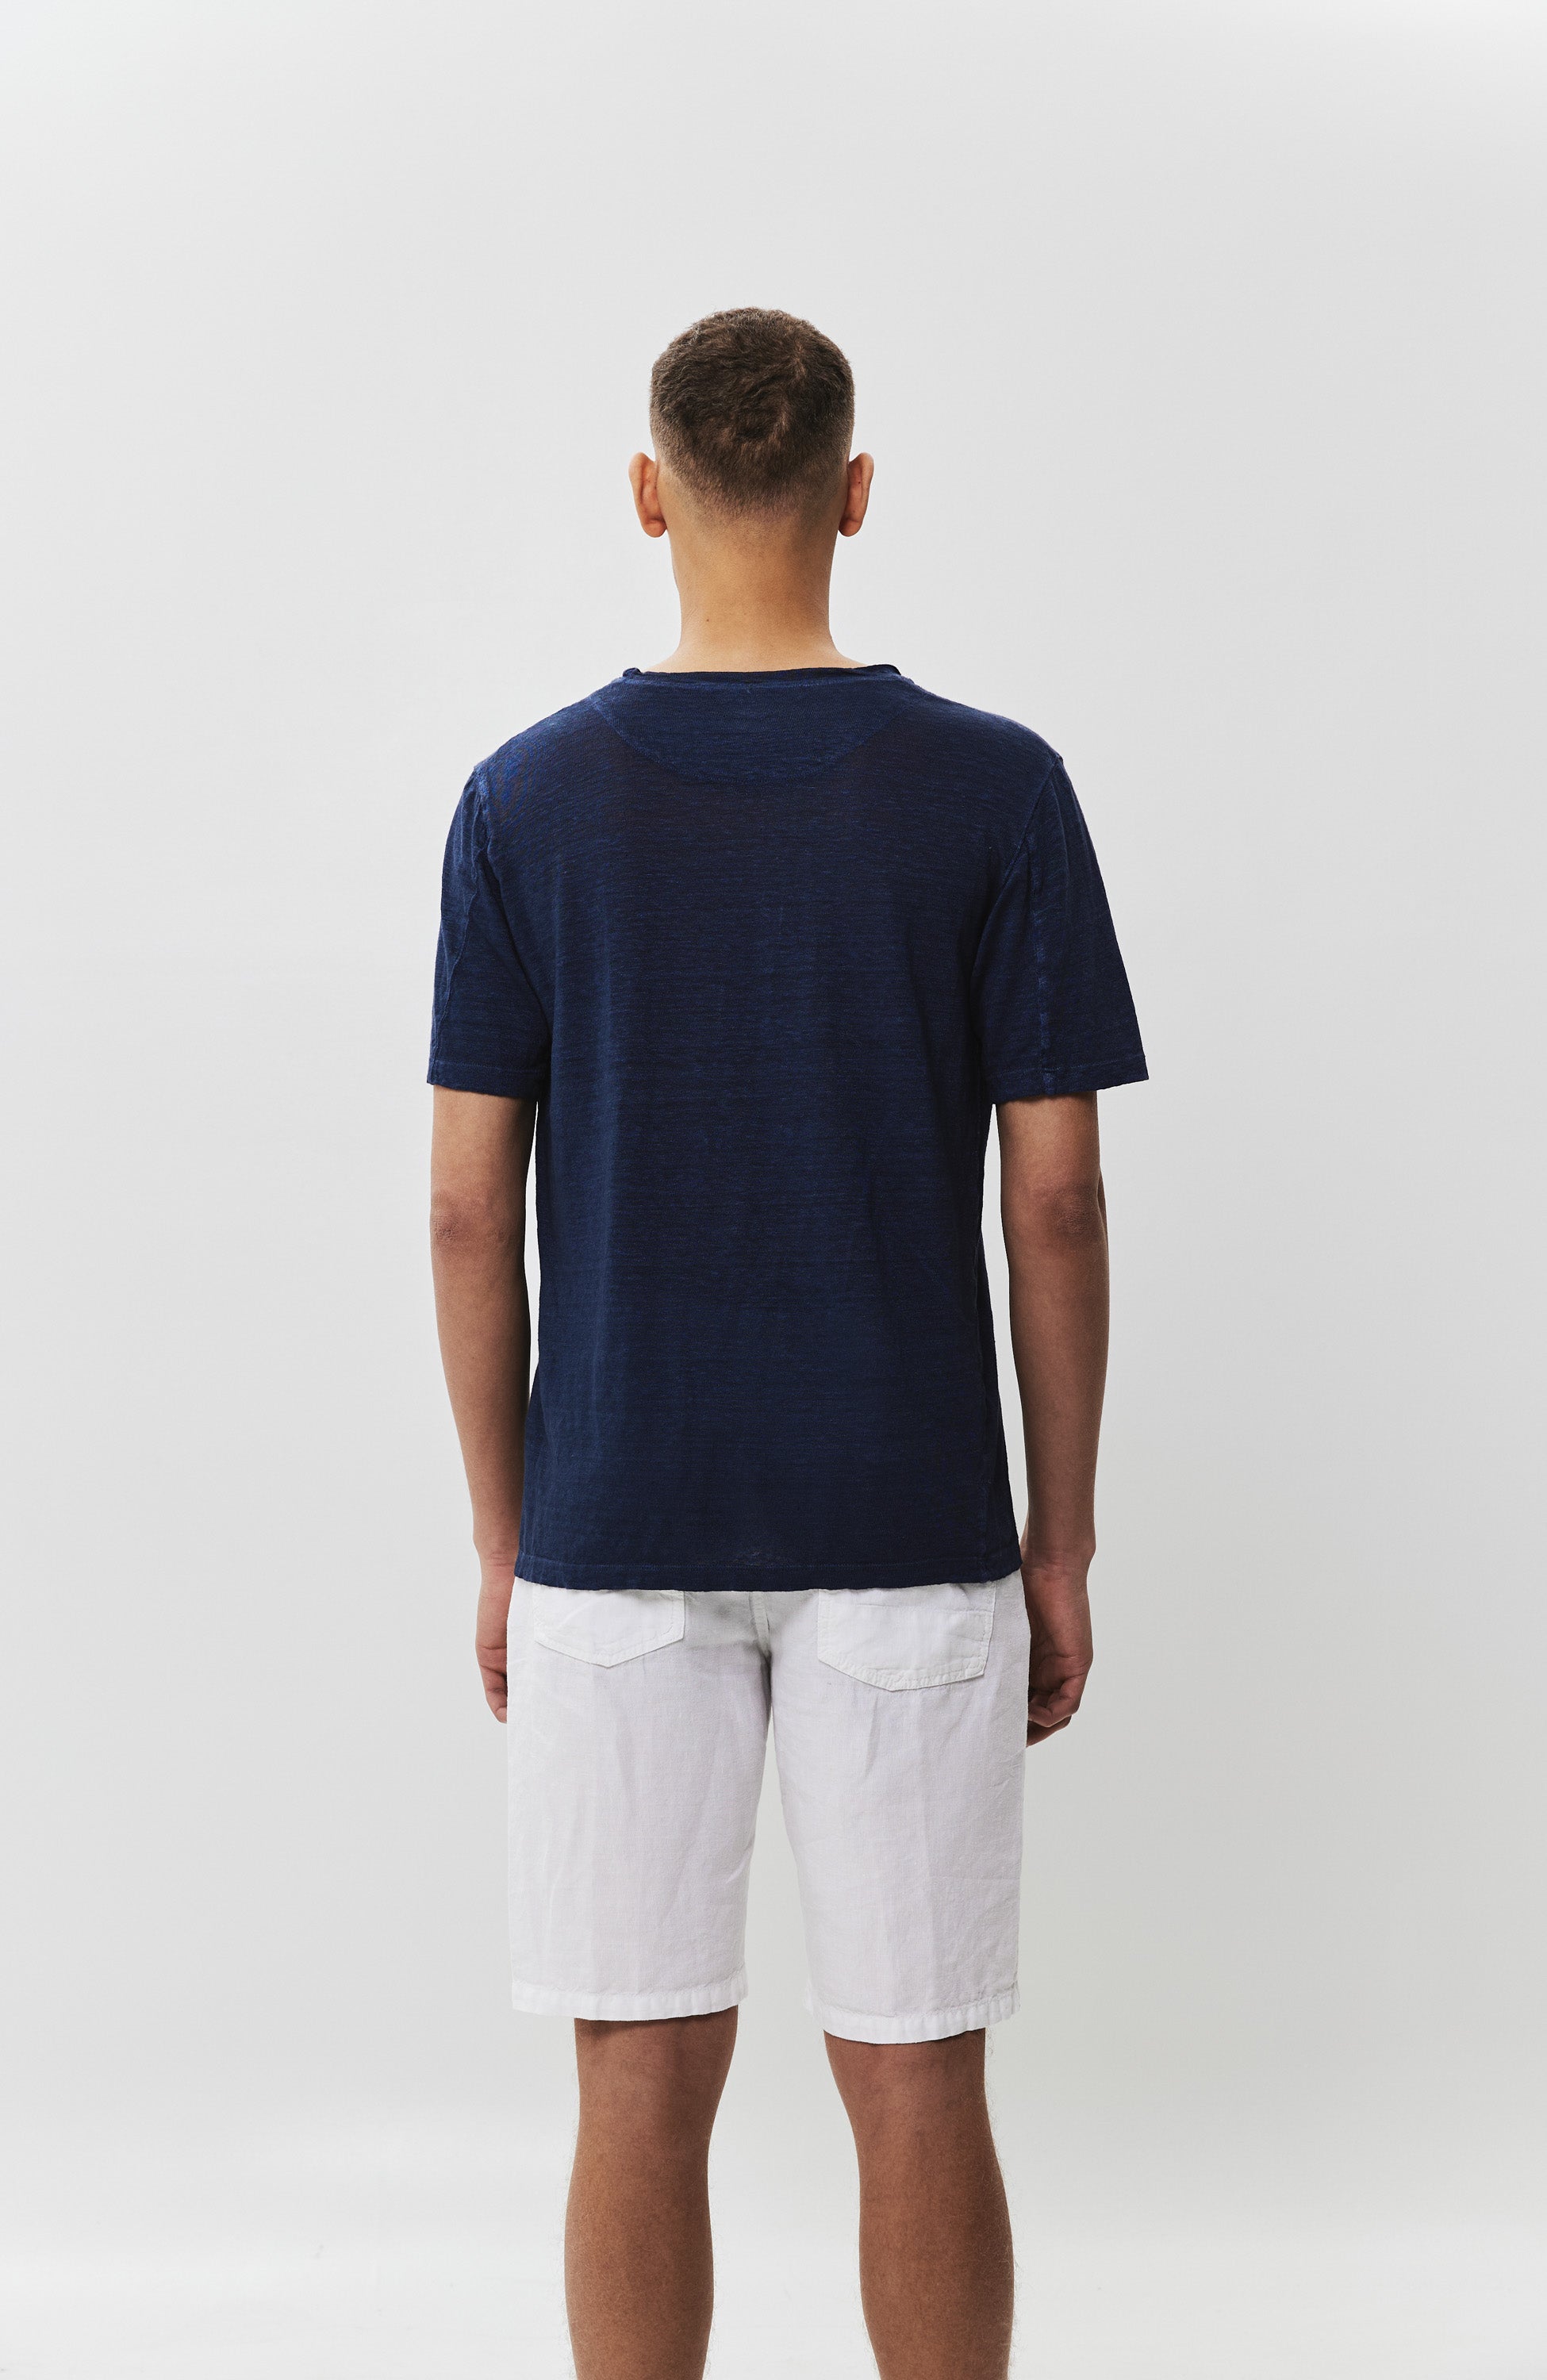 Linen basic t-shirt